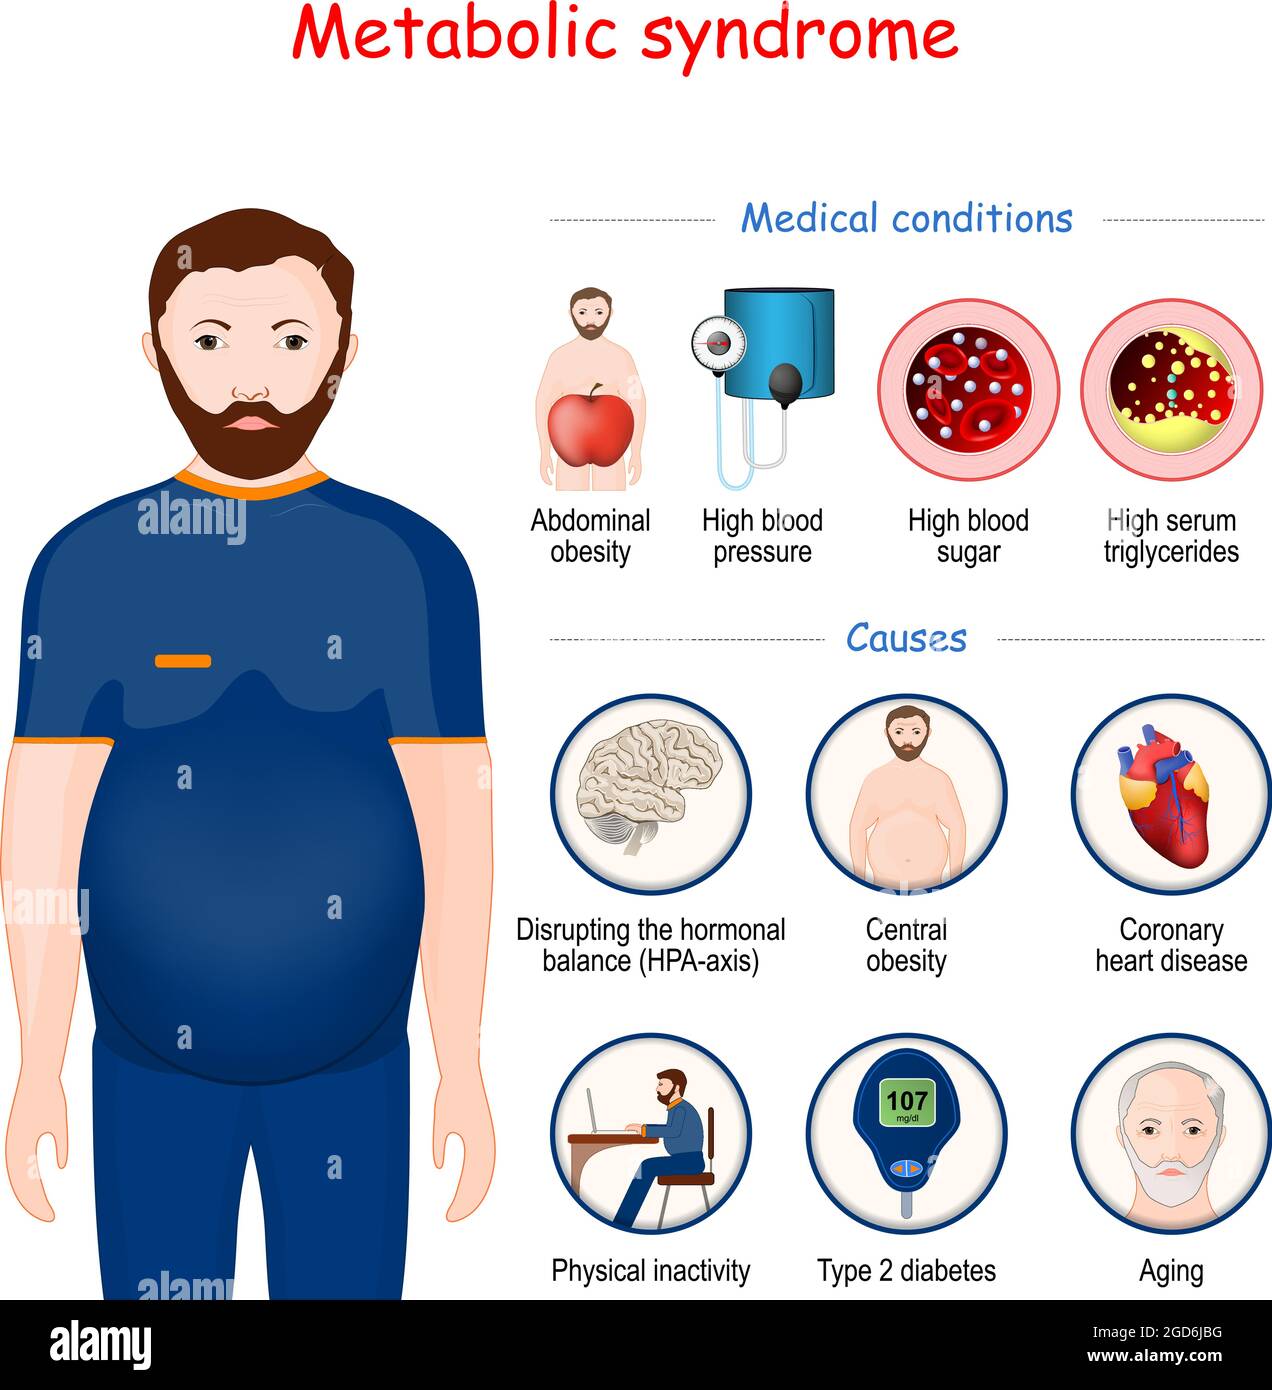 Syndrome métabolique. Infographie sur les causes et les conditions médicales. Métabolisme humain. Homme avec obésité abdominale. Illustration vectorielle Illustration de Vecteur